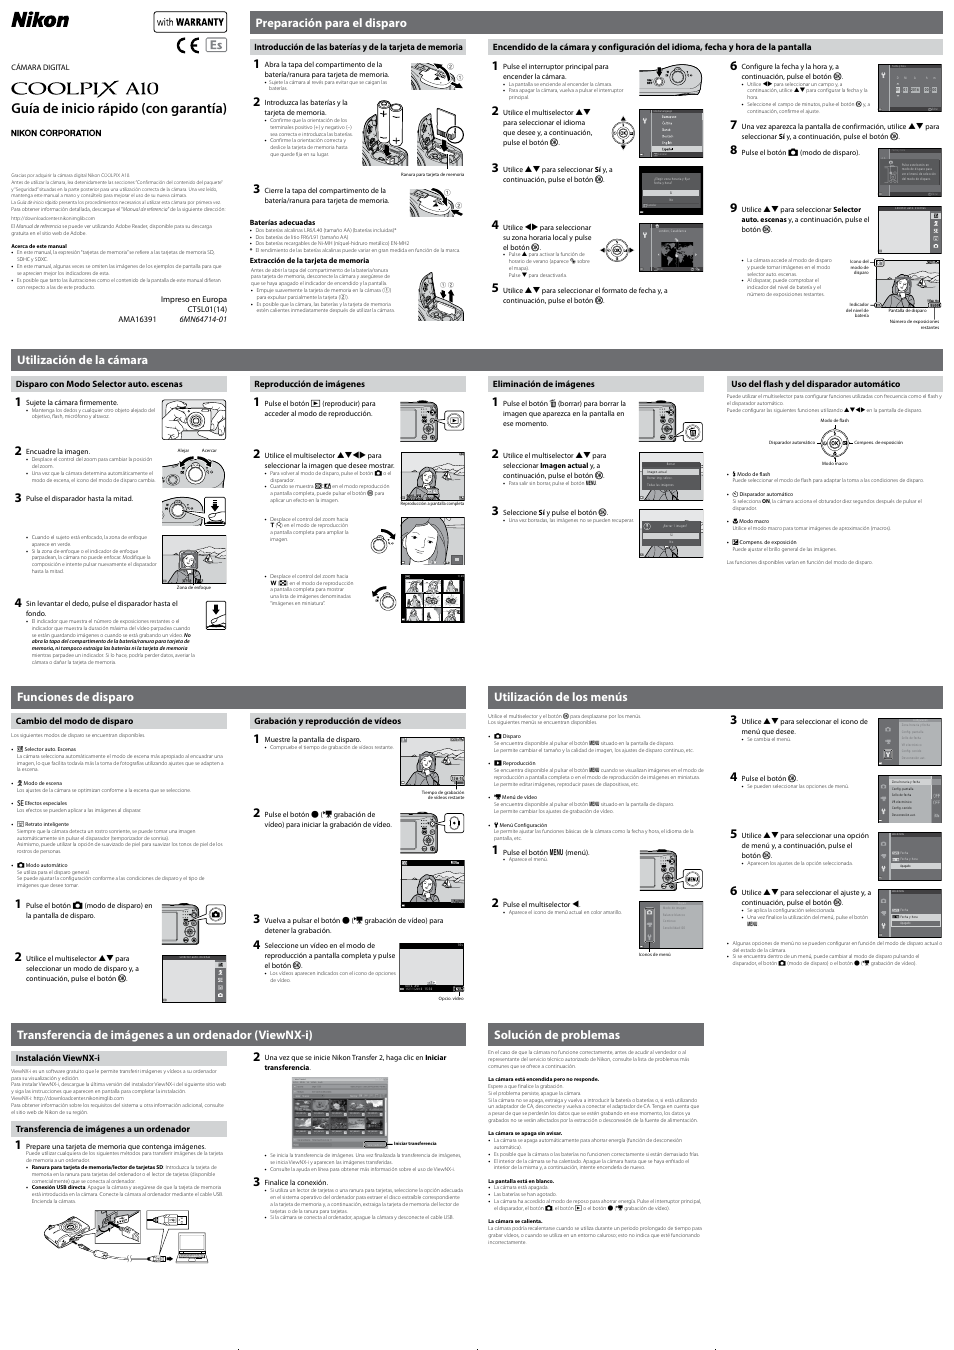 Nikon Coolpix A10 Manual del usuario | Páginas: 2